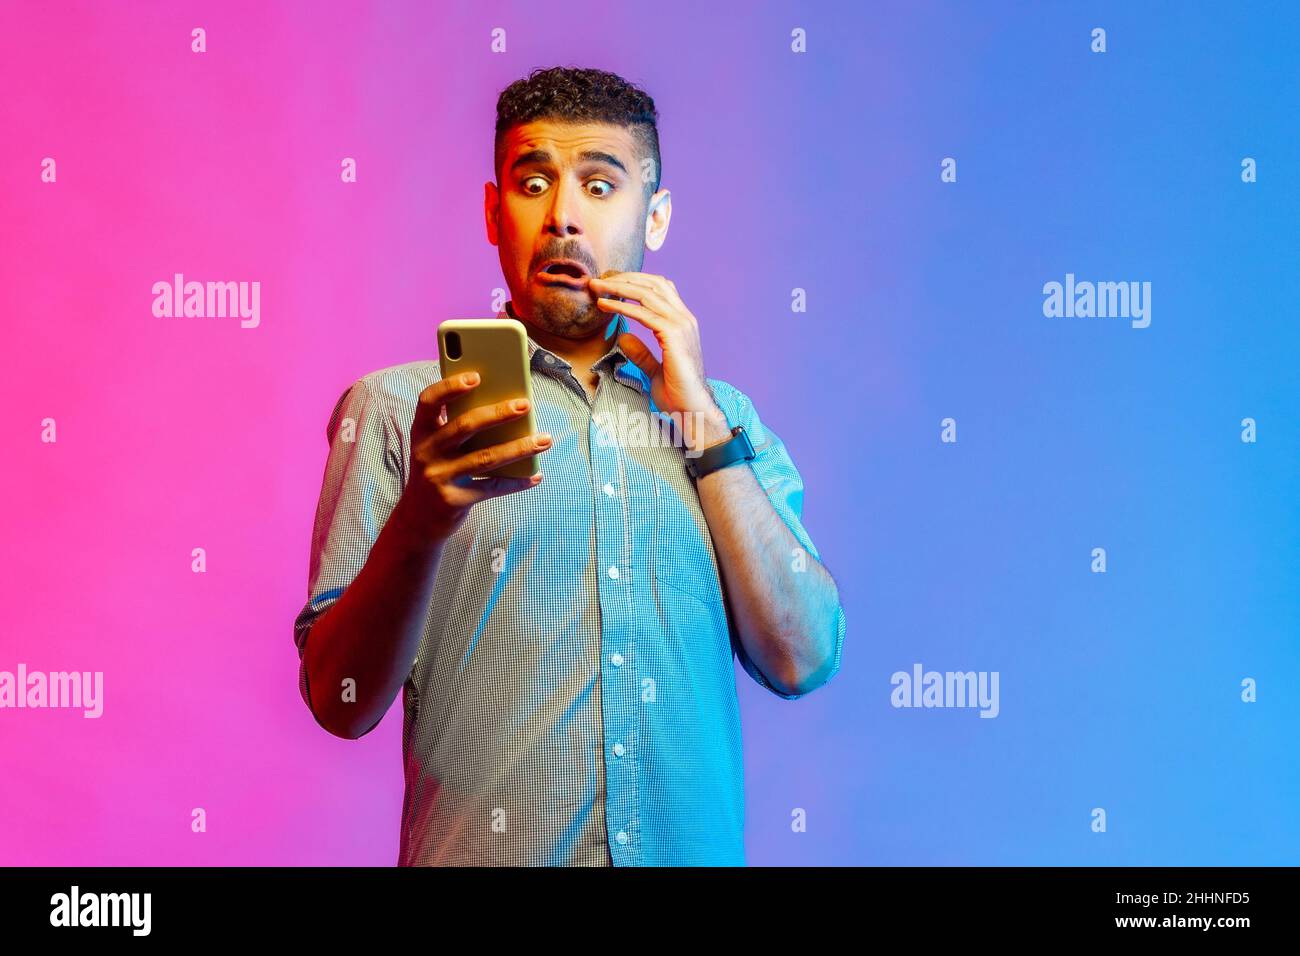 Porträt des Mannes im Hemd Blick auf Smartphone-Display mit lustig verängstigten Gesicht, schockiert und überrascht von der Anwendung. Innenaufnahmen im Studio, isoliert auf farbigem Neonlicht-Hintergrund. Stockfoto